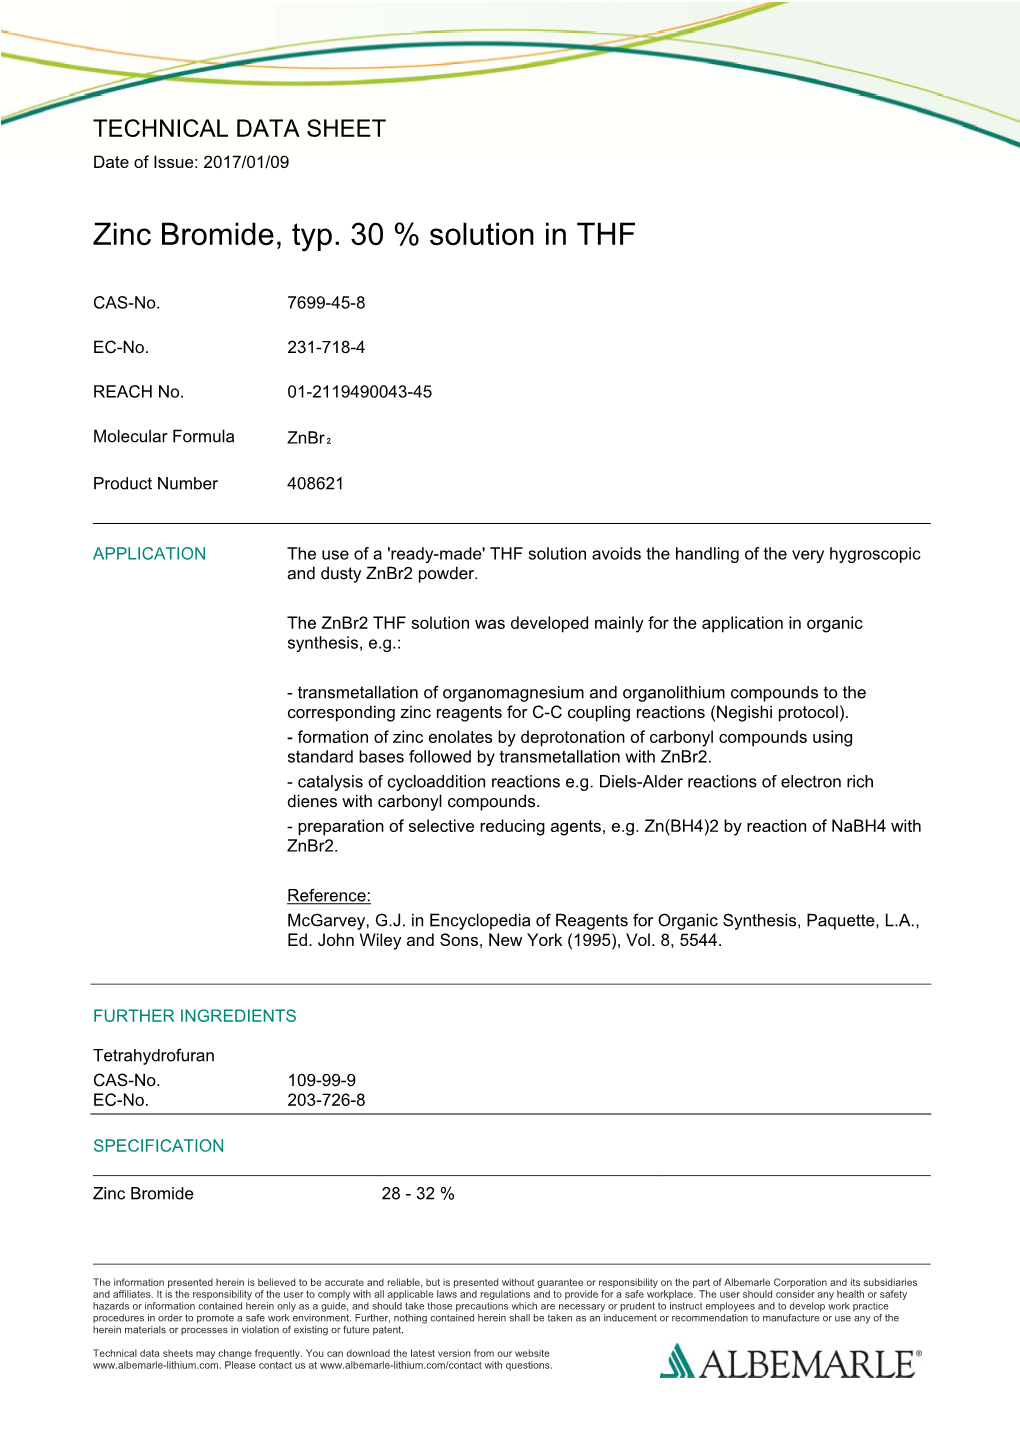 Zinc Bromide, Typ. 30 % Solution in THF